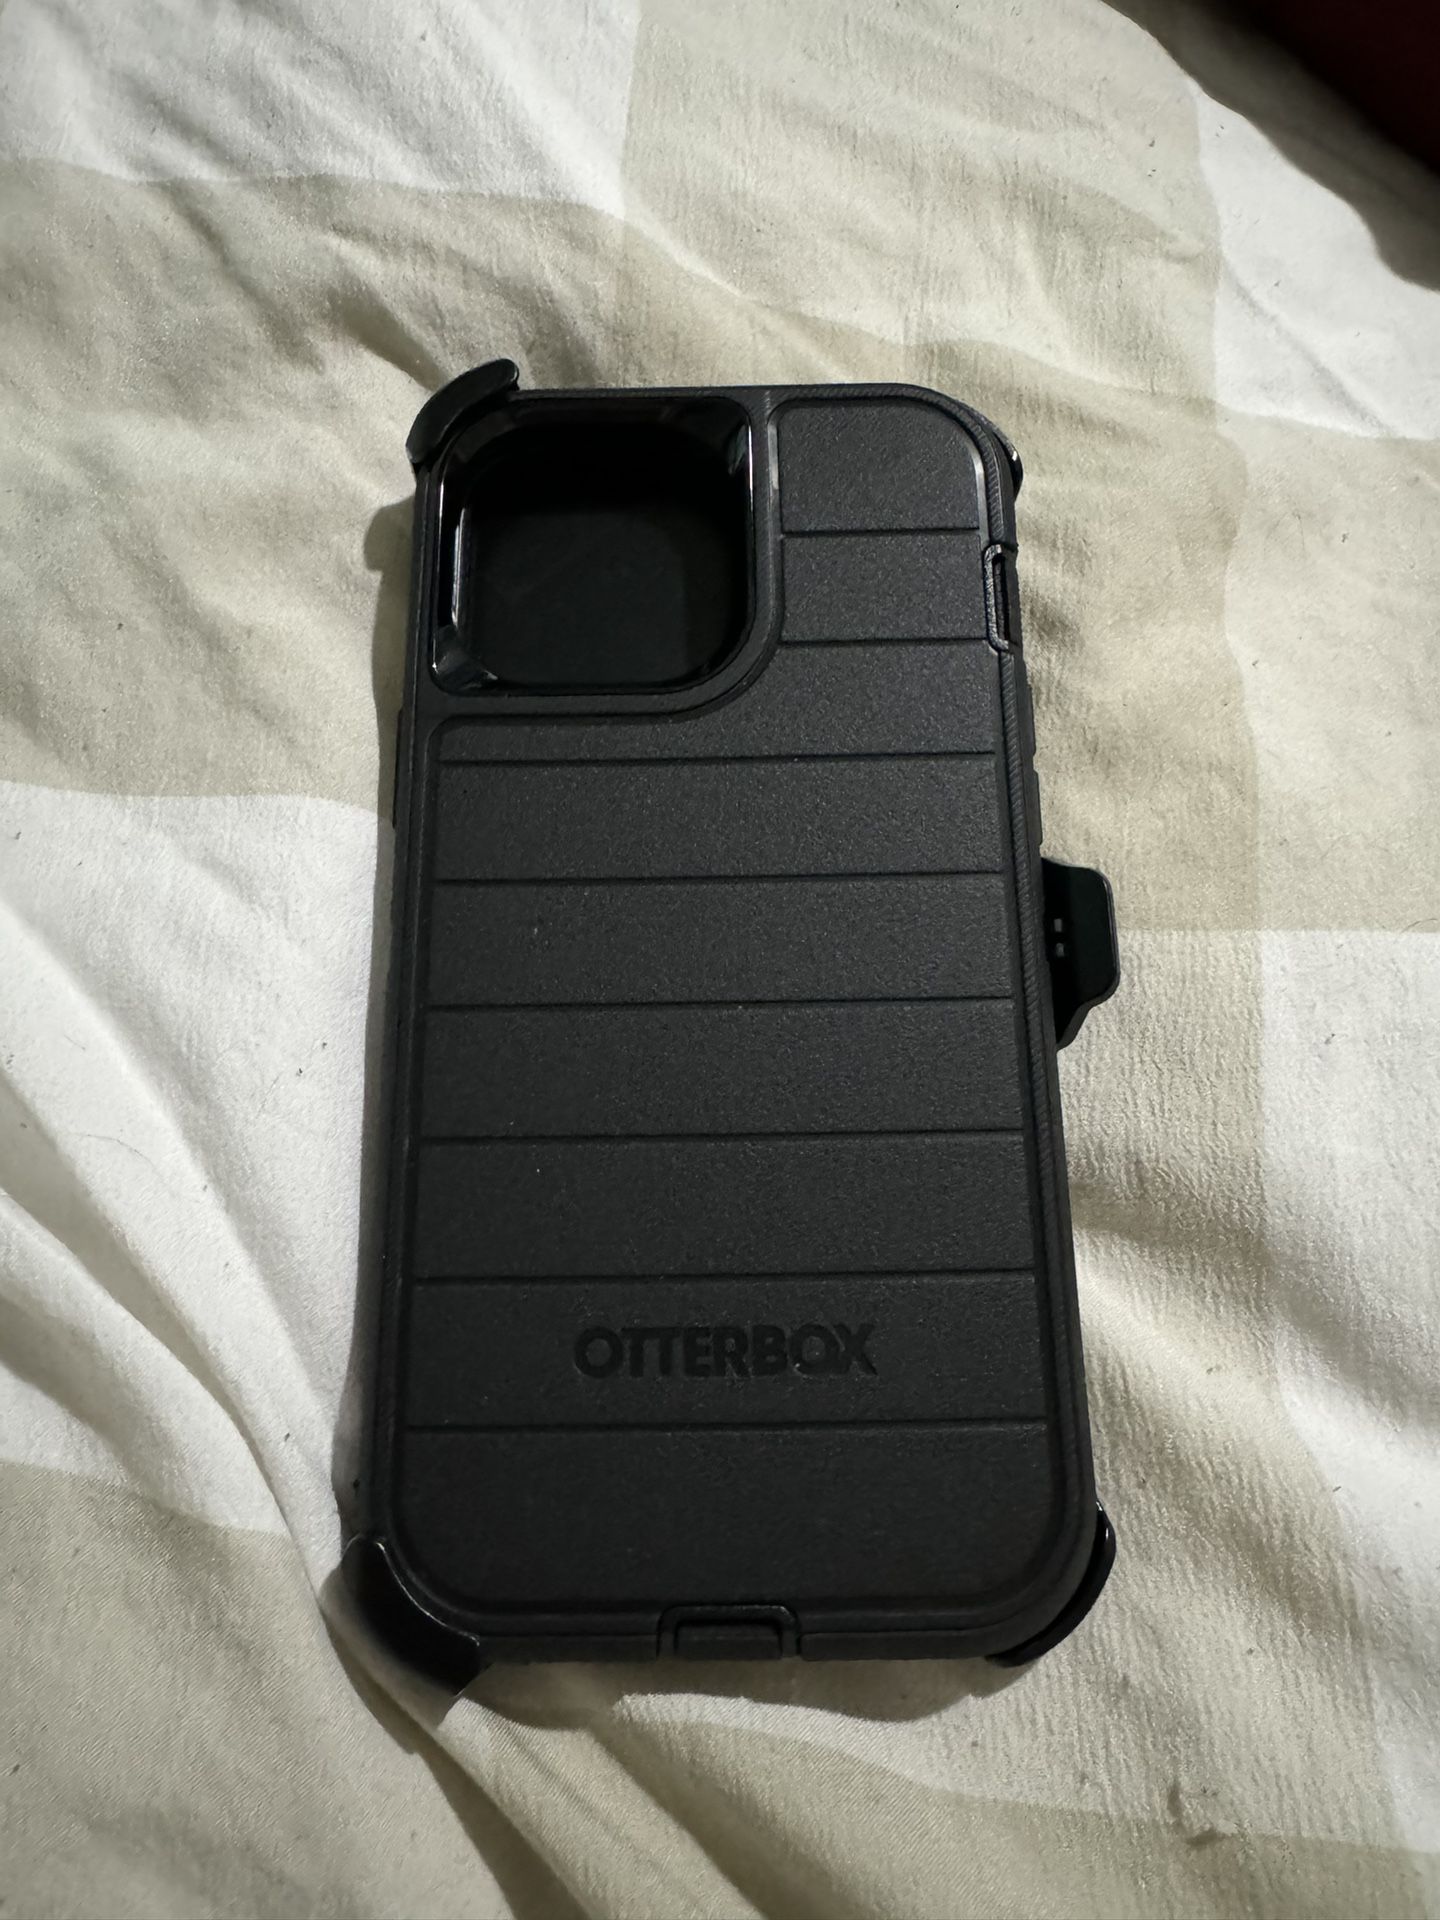 12/13/14 pro max otterbox case